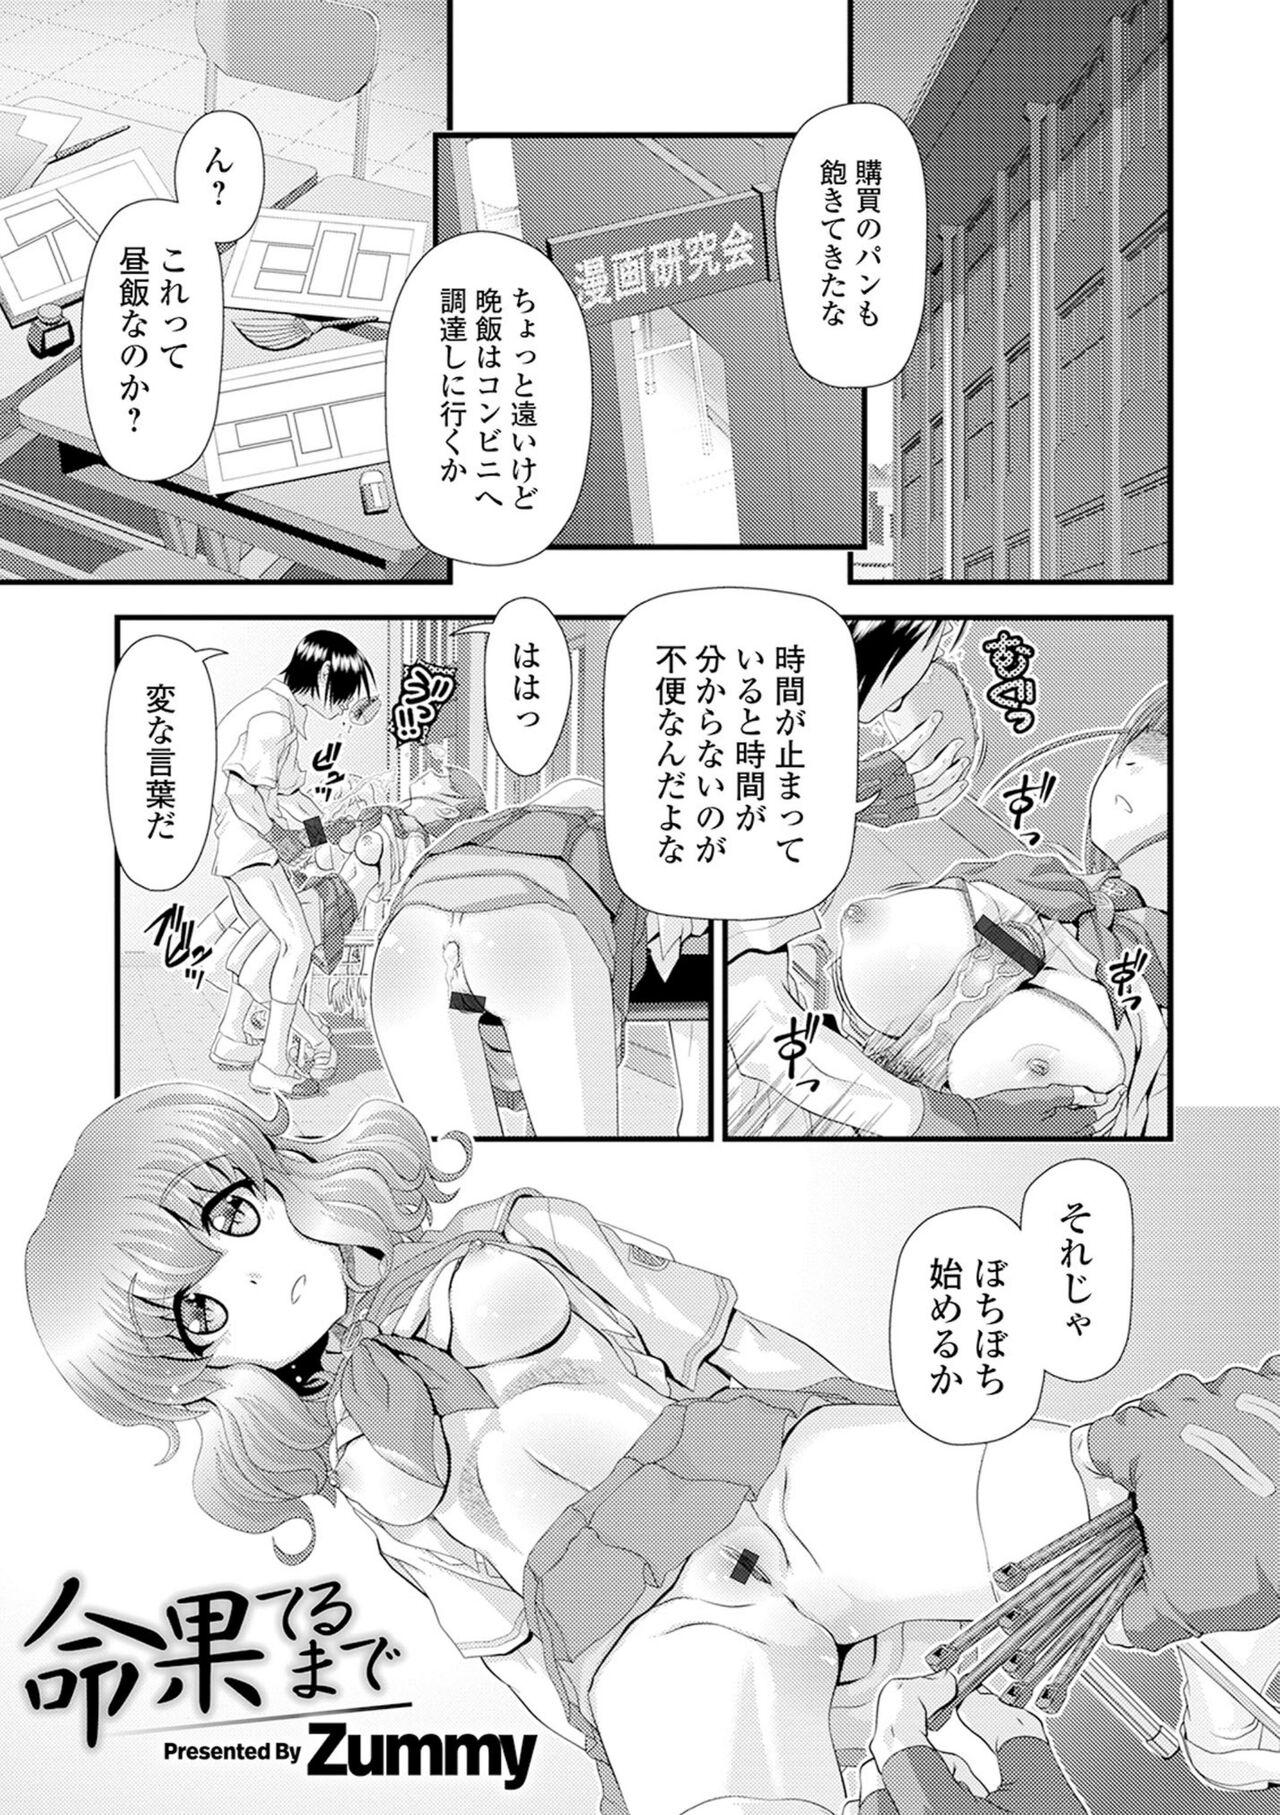 Gostosas Kyousei! Oshioki Time Vol. 02 Ffm - Page 3